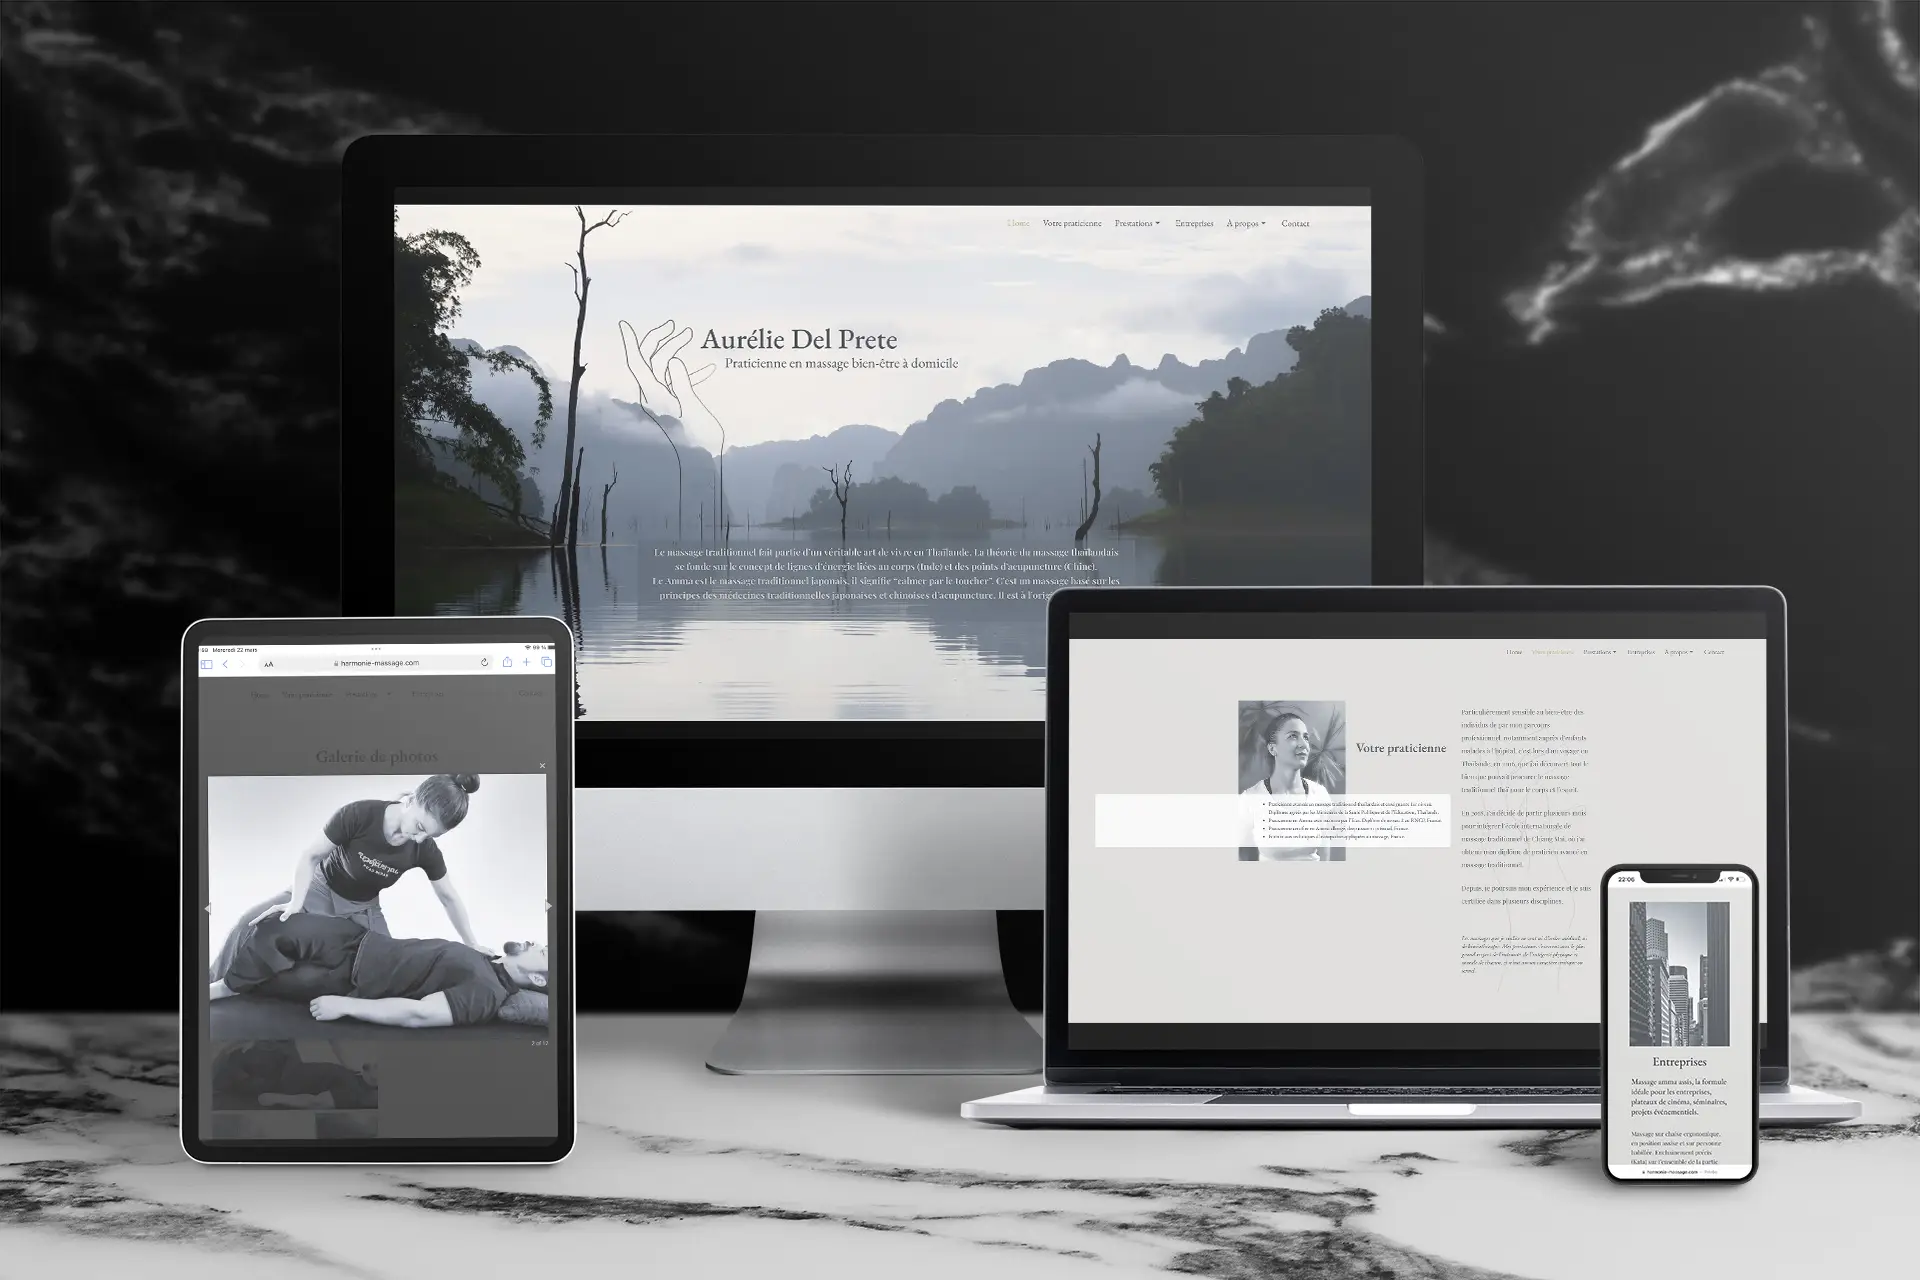 Visuel mockup présentant le site d'Aurélie Del Prete sur divers écrans (desktop, mobile, tablette) en mode responsive